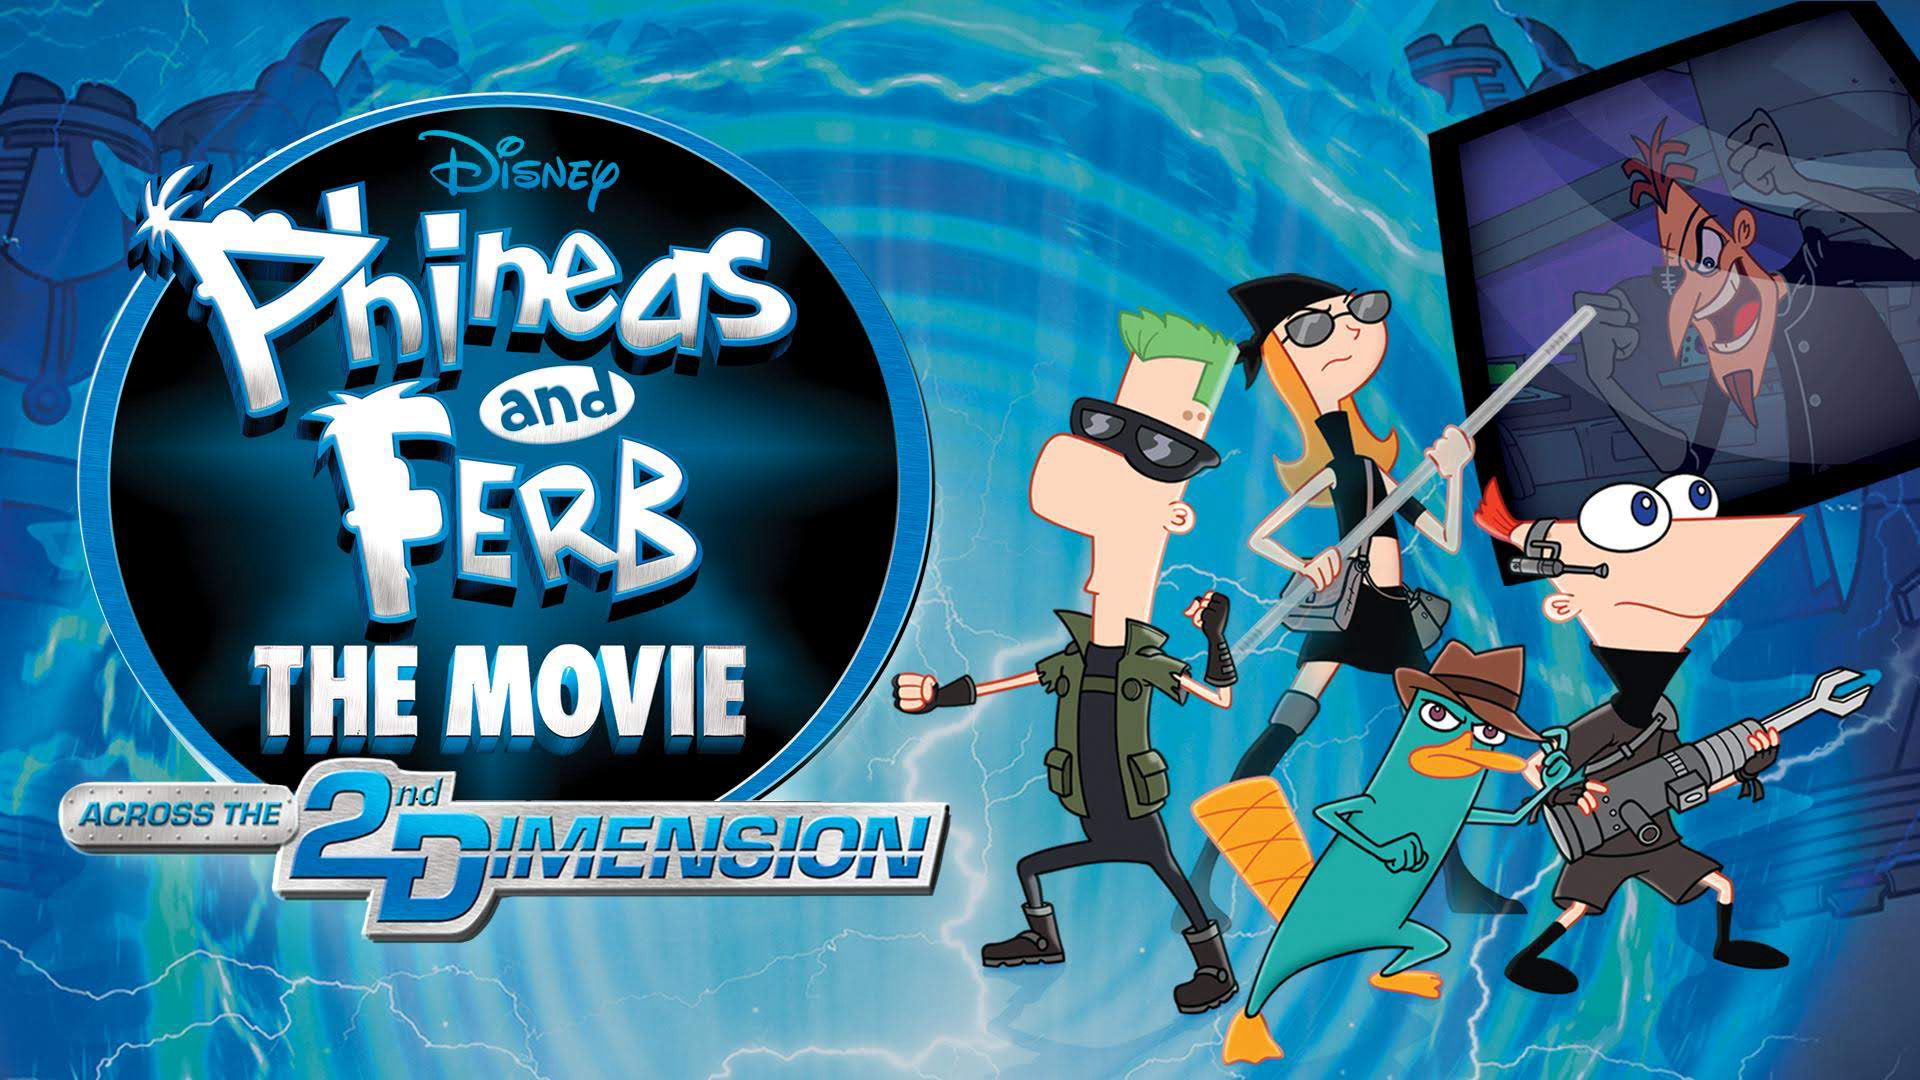 Banner Phim Phineas và Ferb: Băng Qua Chiều Không Gian Thứ 2 (Phineas and Ferb the Movie: Across the 2nd Dimension)